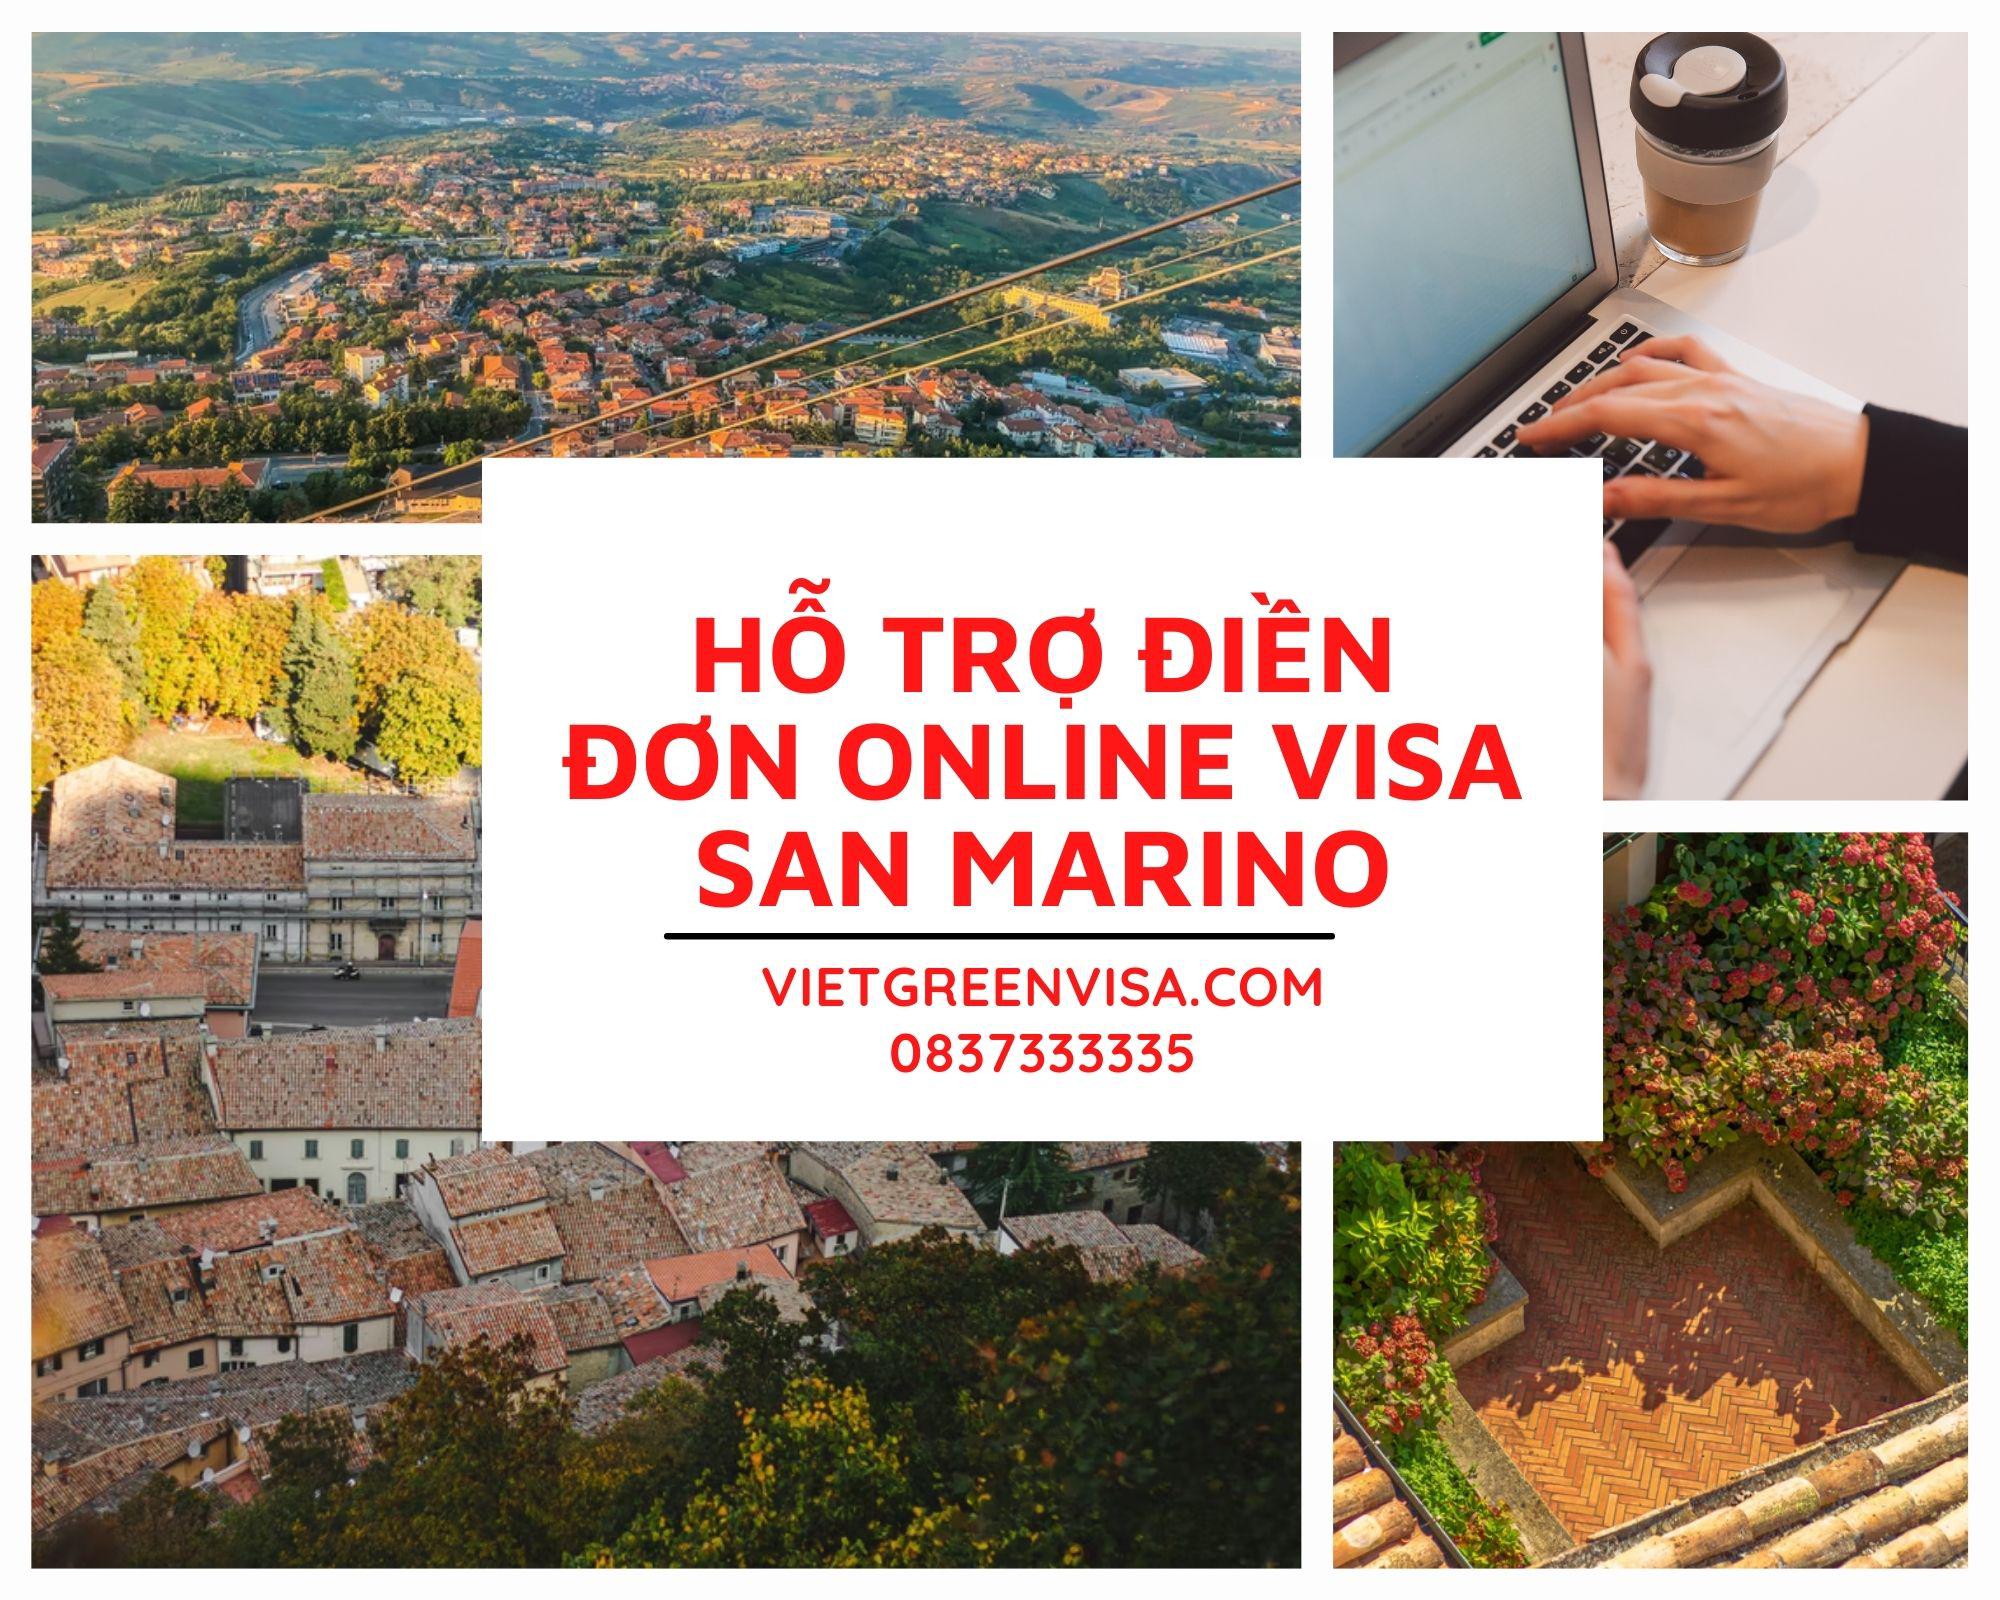 Tư vấn điền đơn visa San Marino online nhanh chóng